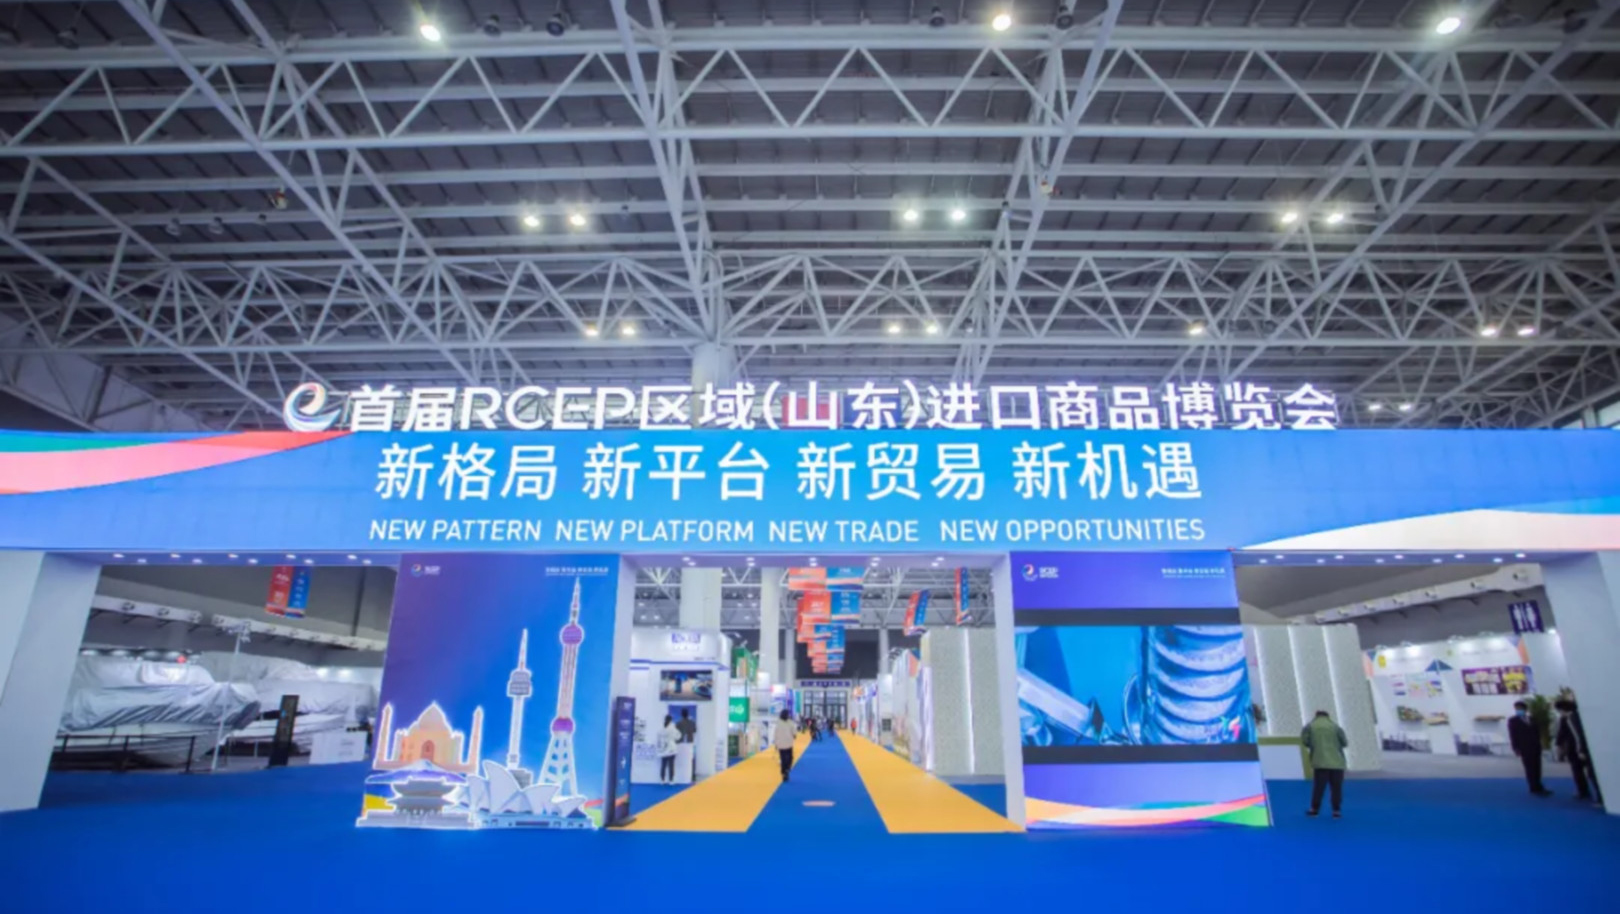 智顺科技受邀参加首届RCEP区域（山东）进口商品博览会。